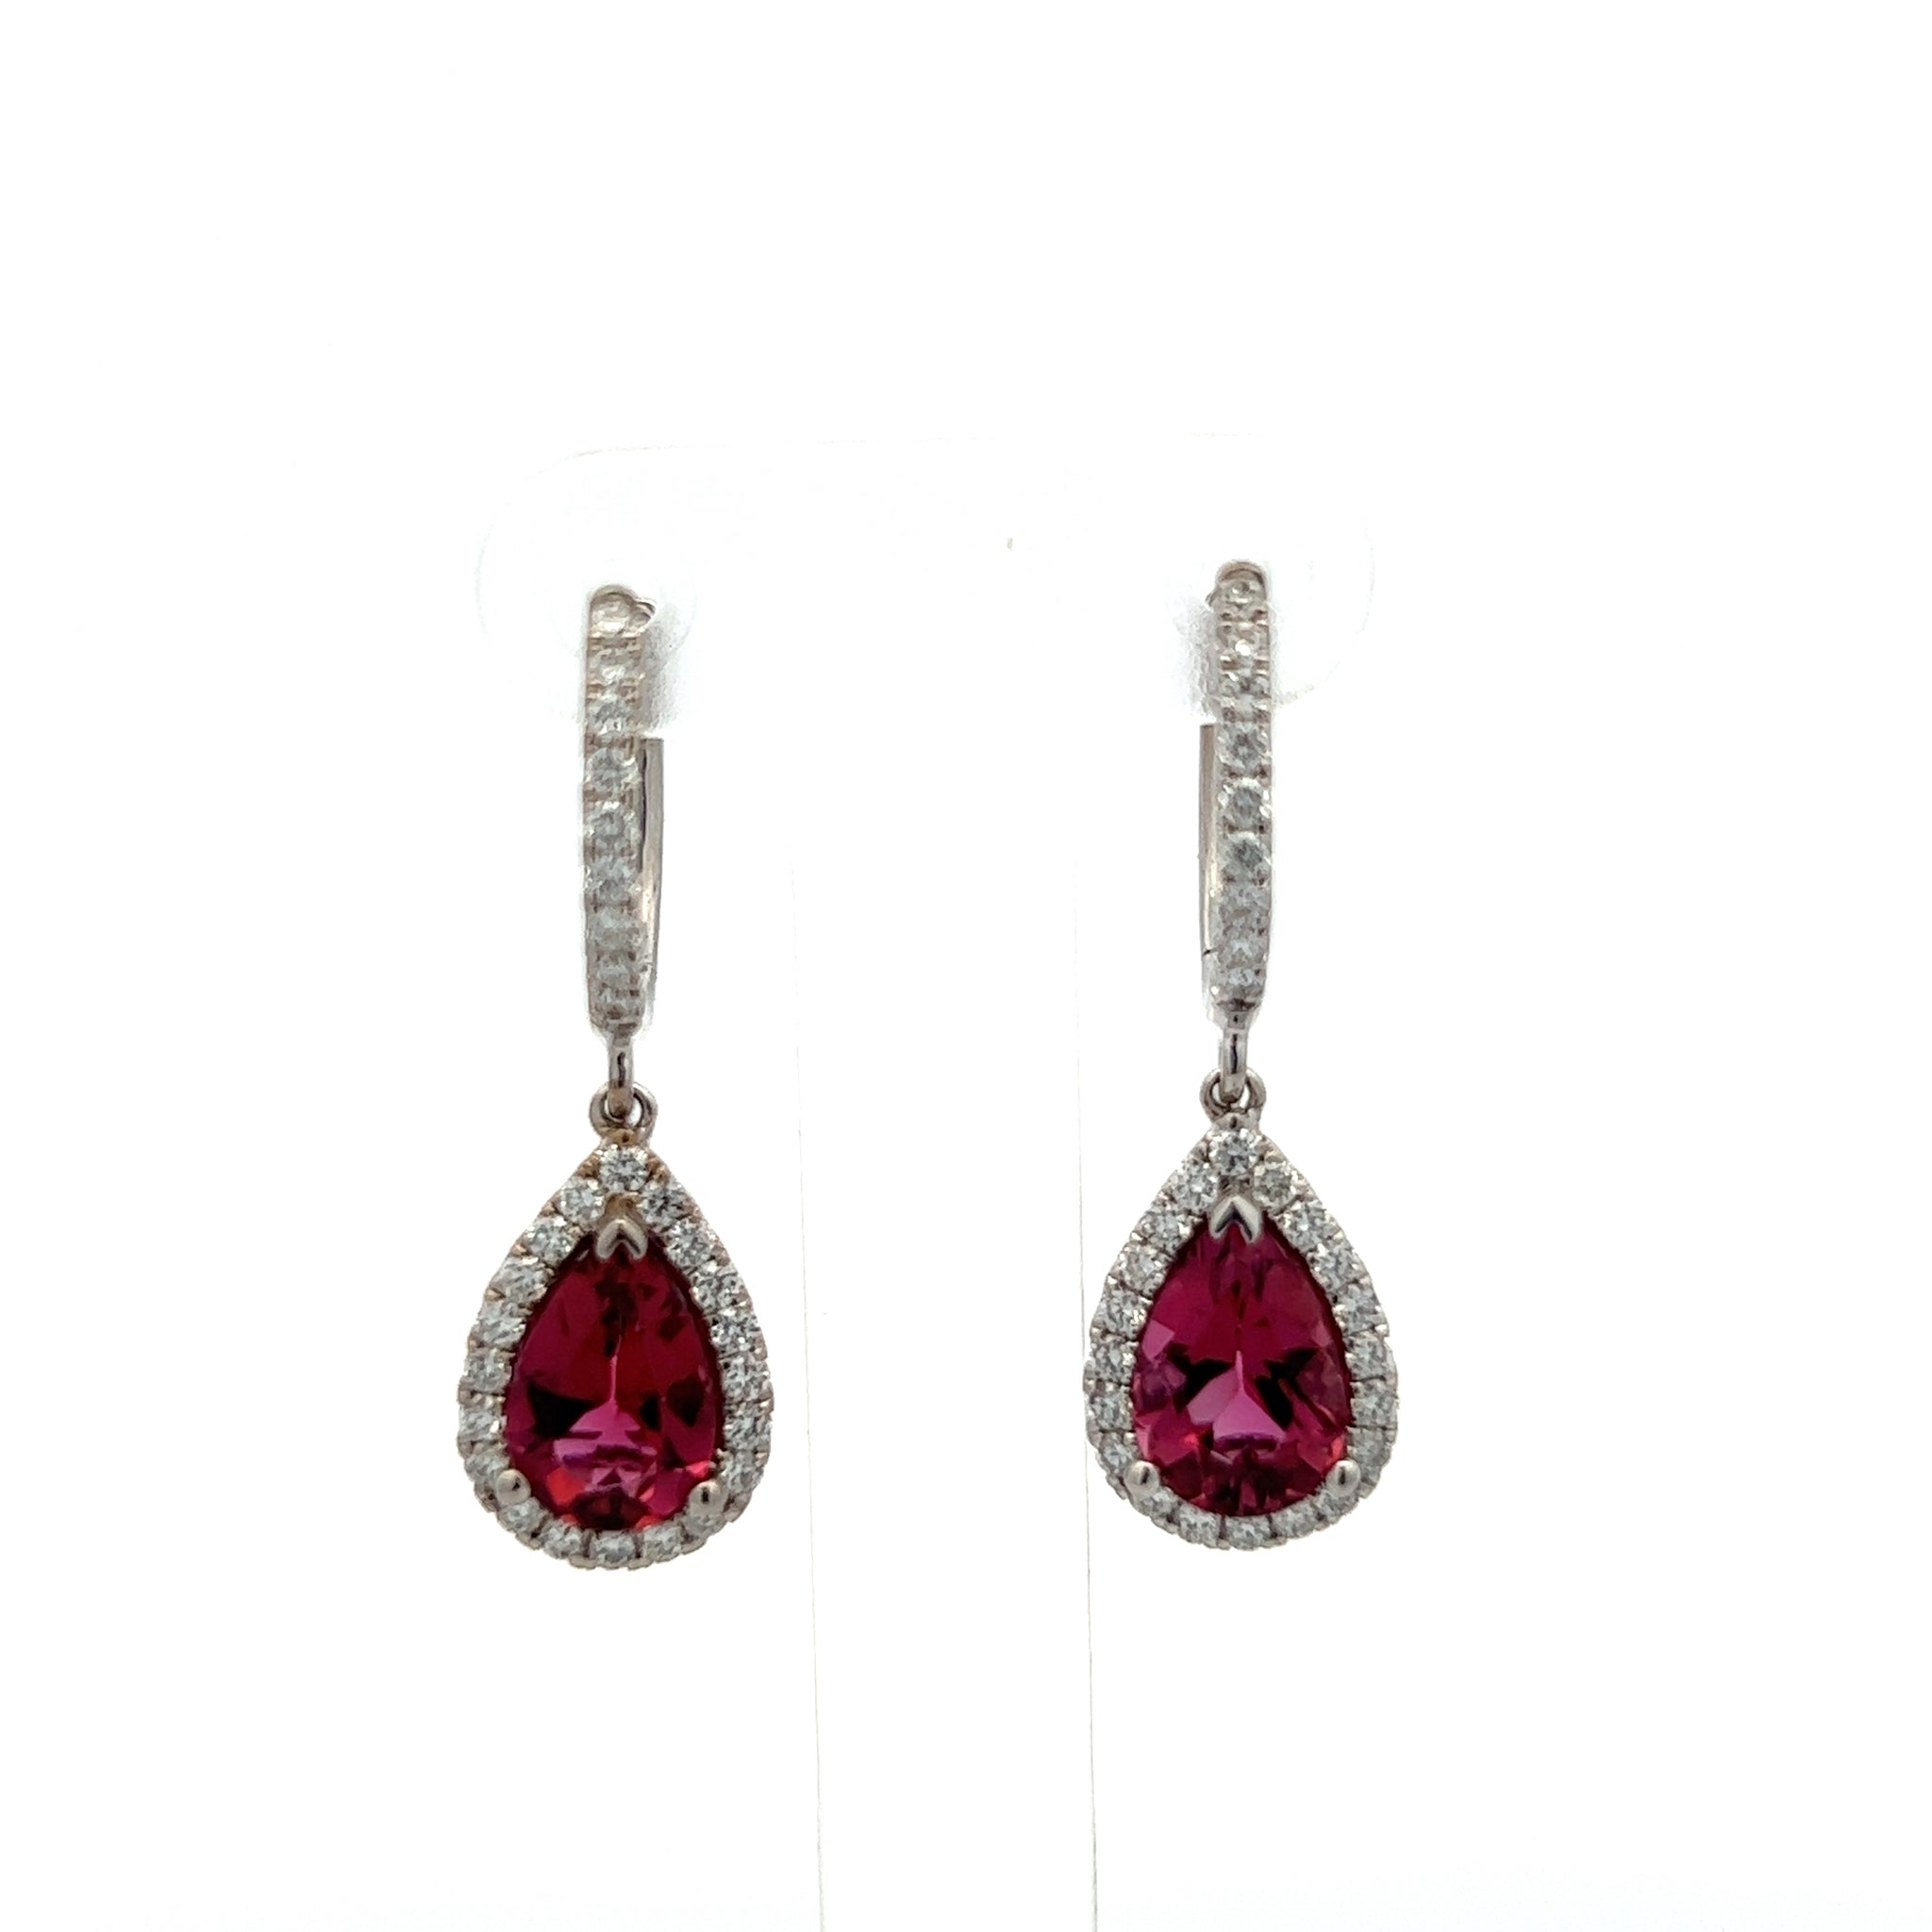 Diamond Rubellite Tourmaline Drop Earrings 18k W Gold 2.93 TCW Certified $5,950 210764